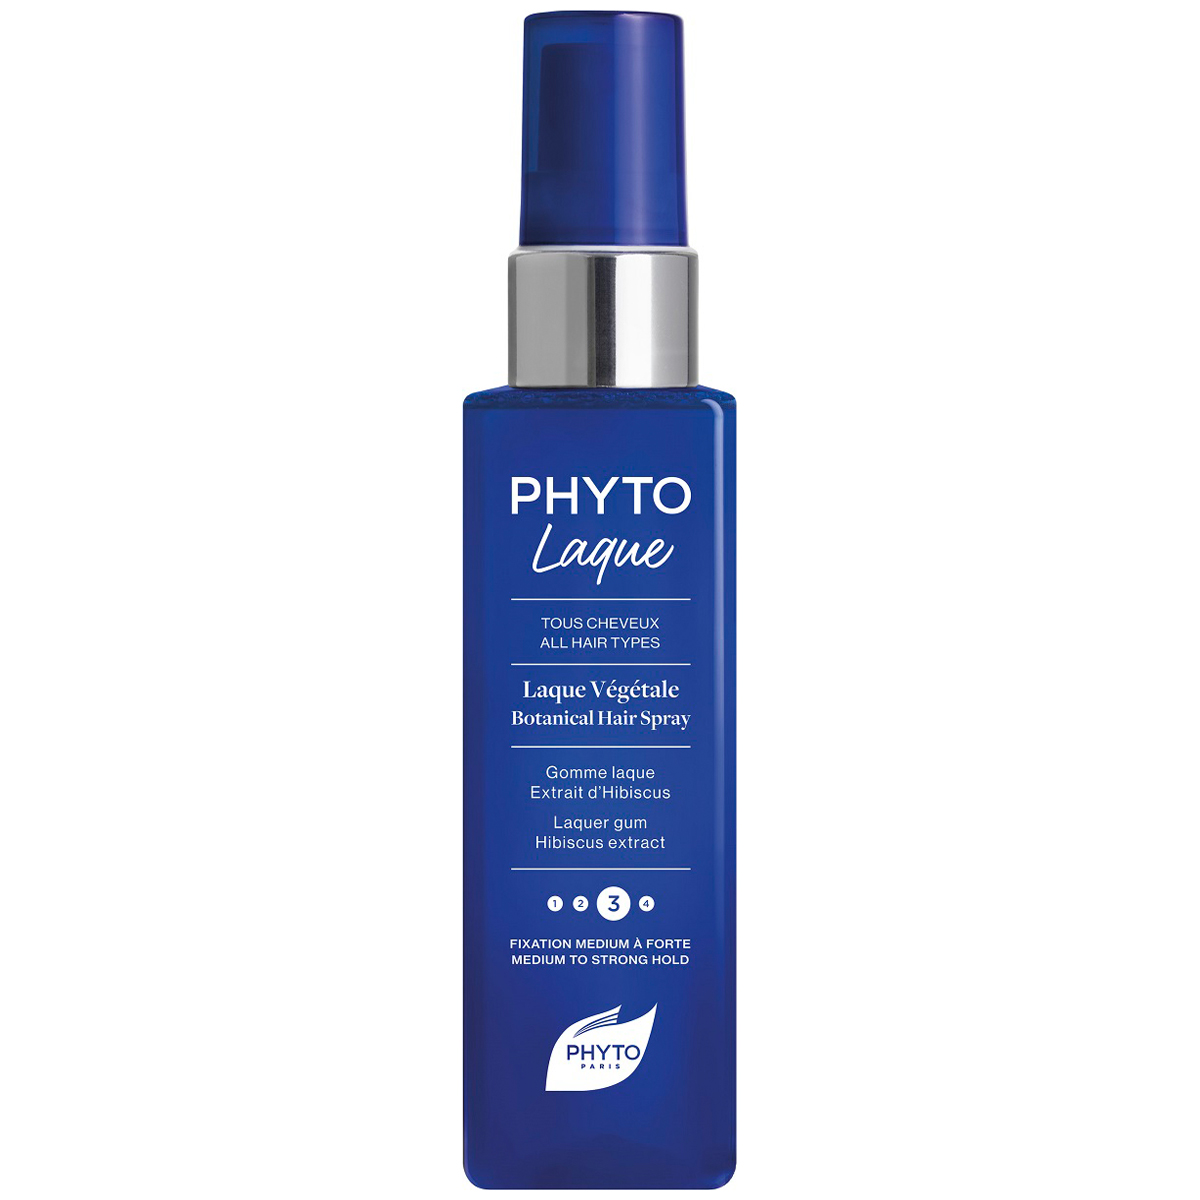 Phyto Растительный лак для волос с средней фиксацией, 100 мл (Phyto, Phytolaque)